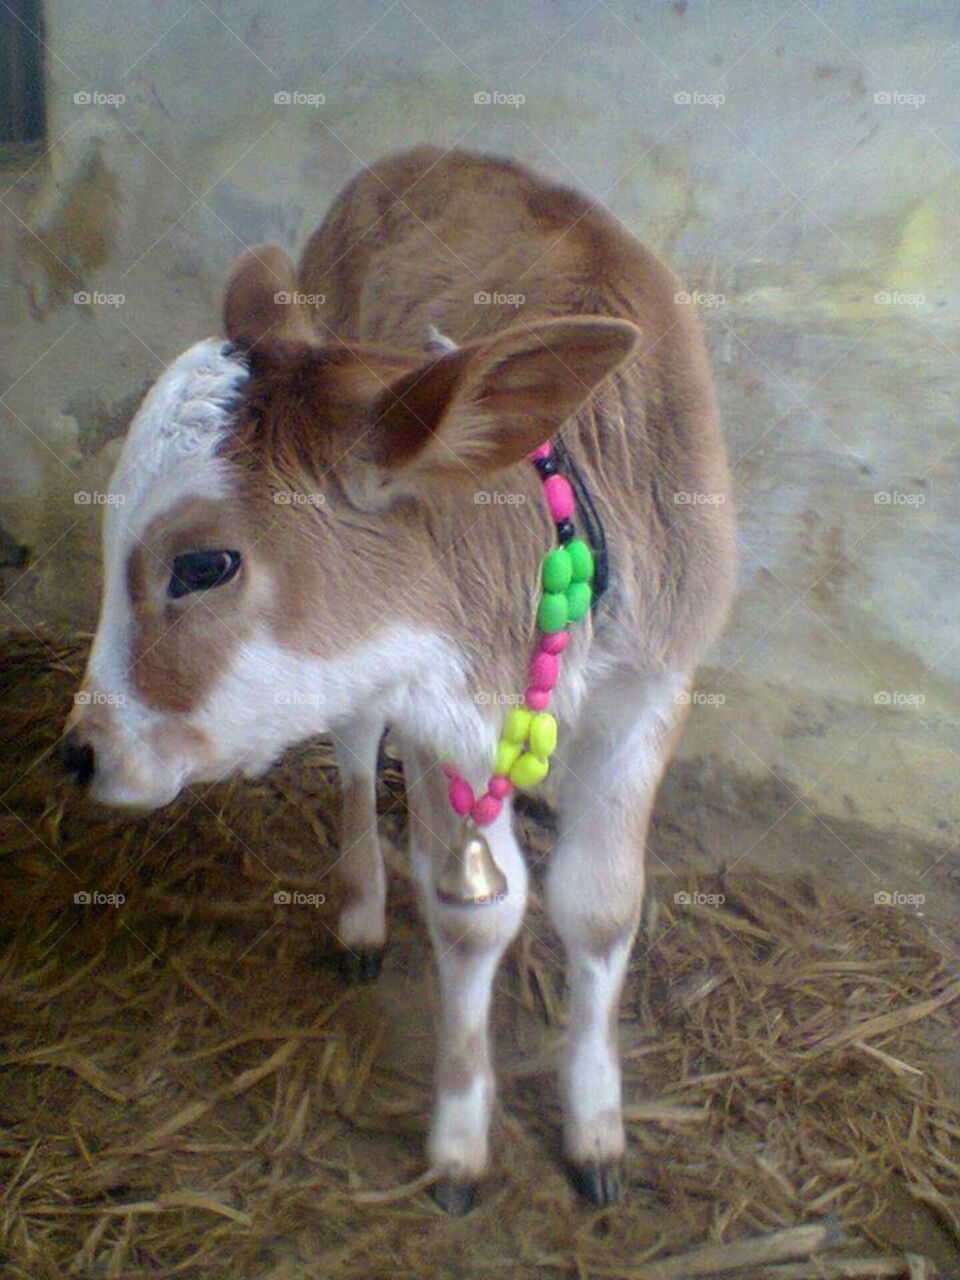 newly born cow calf